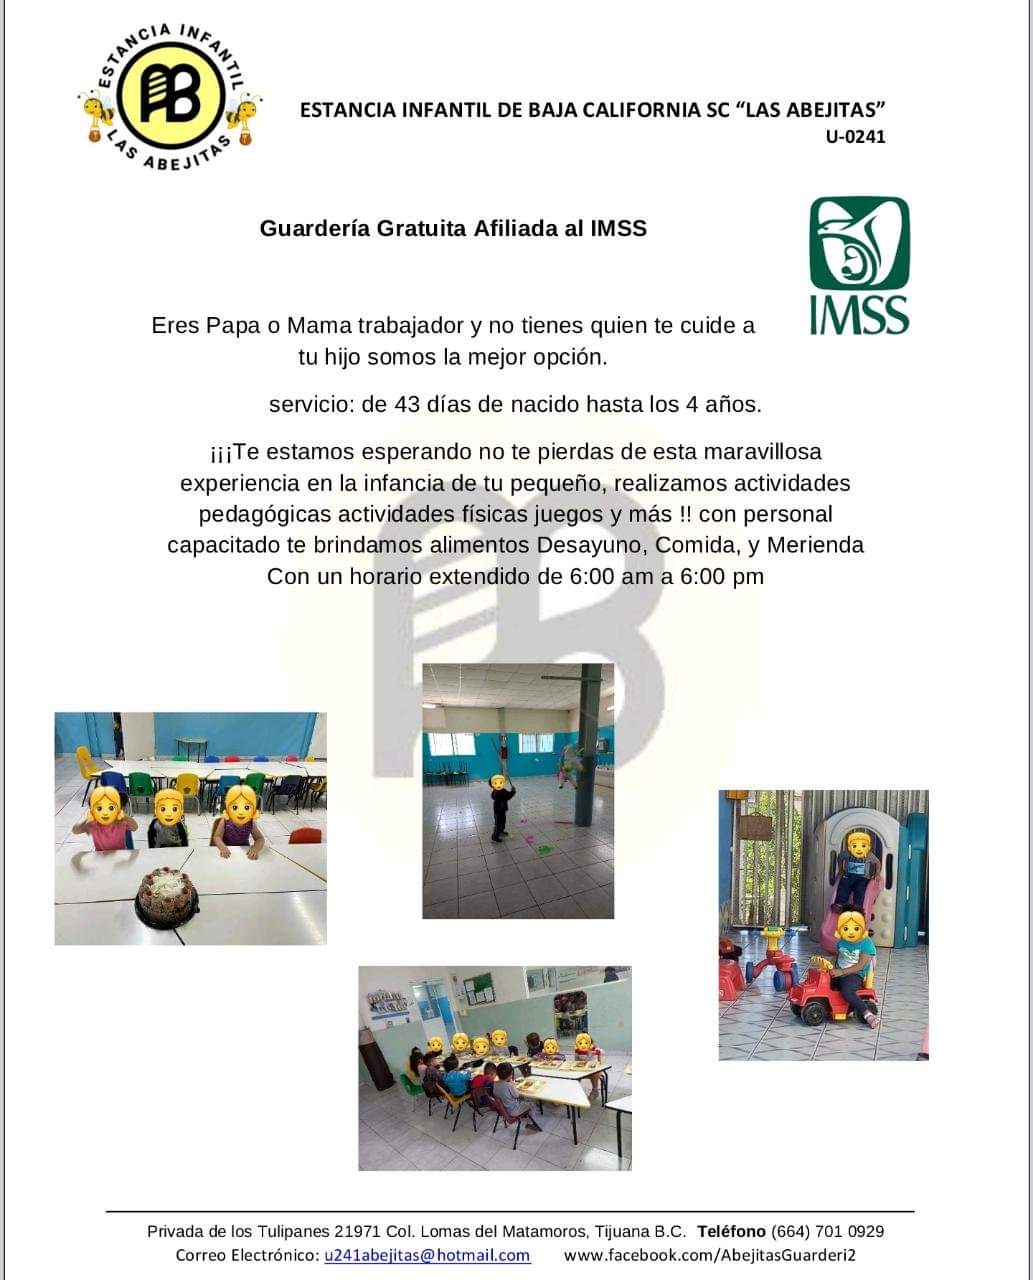 Suspenden guardería del IMSS en Tijuana por casos de abuso sexual a niñxs; Hay 2 denuncias en Fiscalía